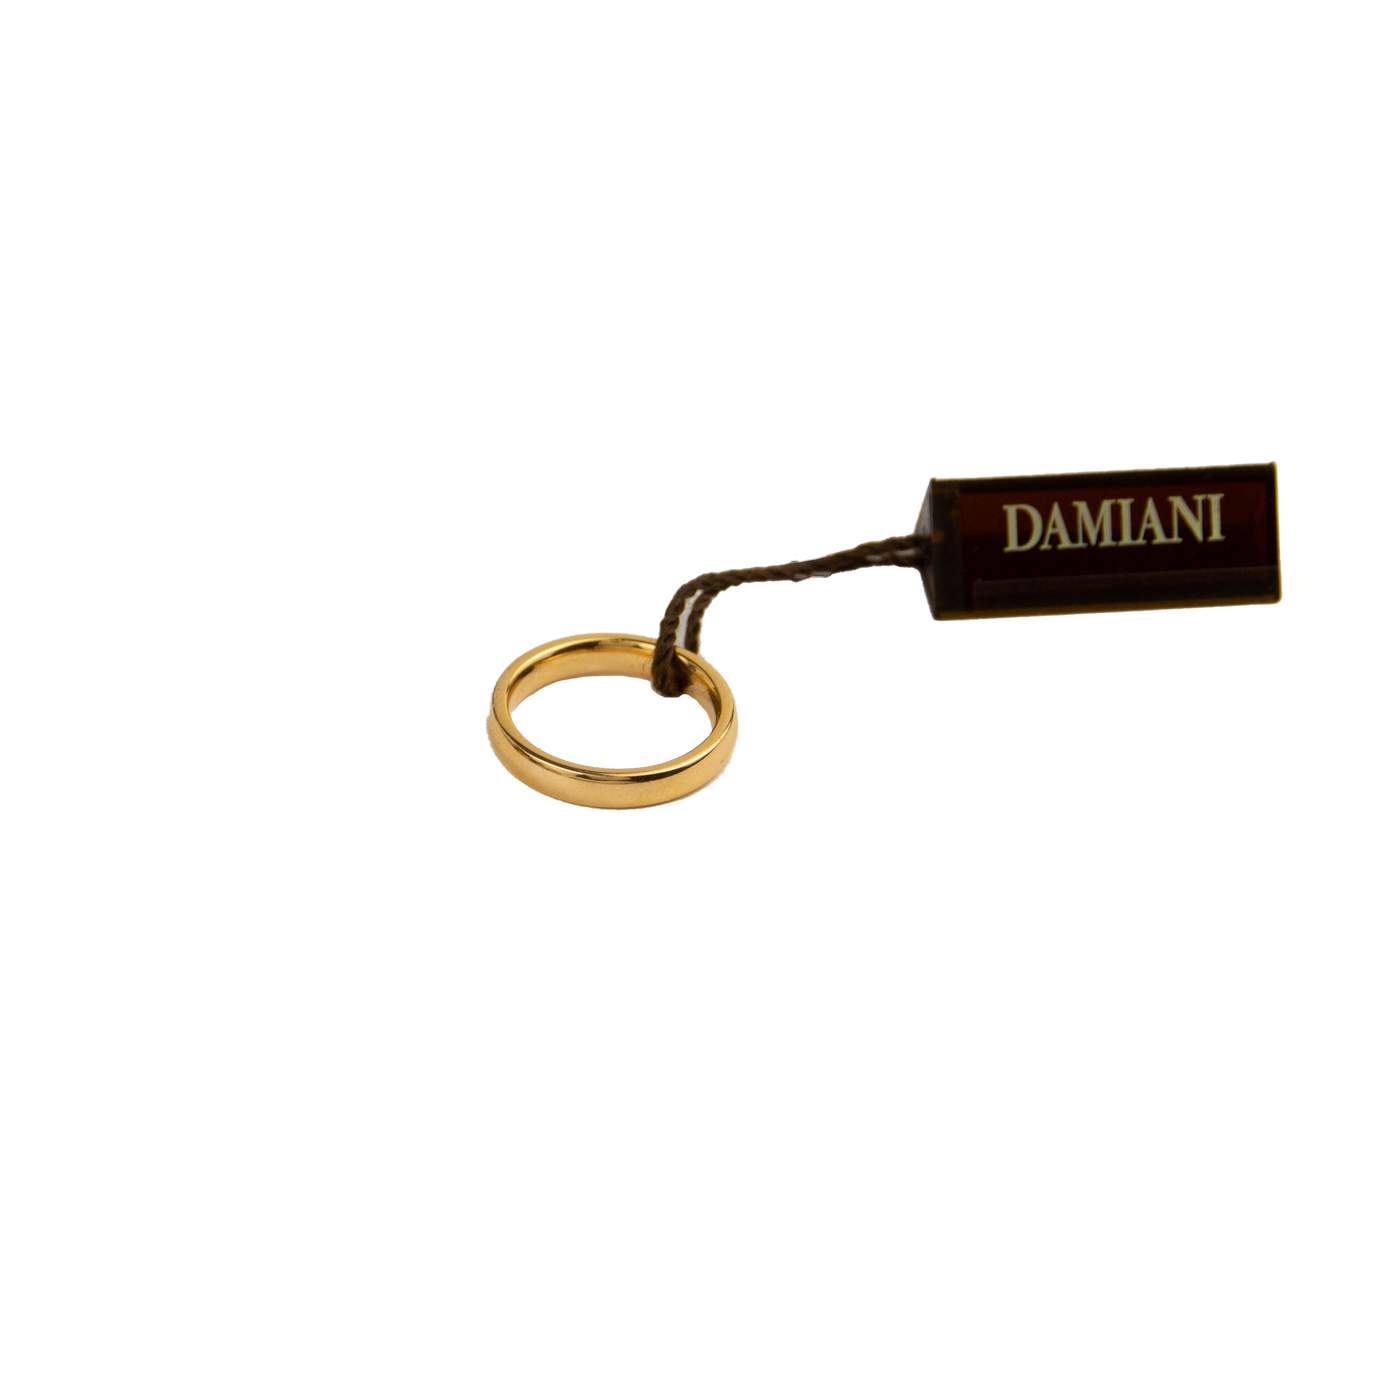 Damiani 18K Rose Gold Men's Band Ring